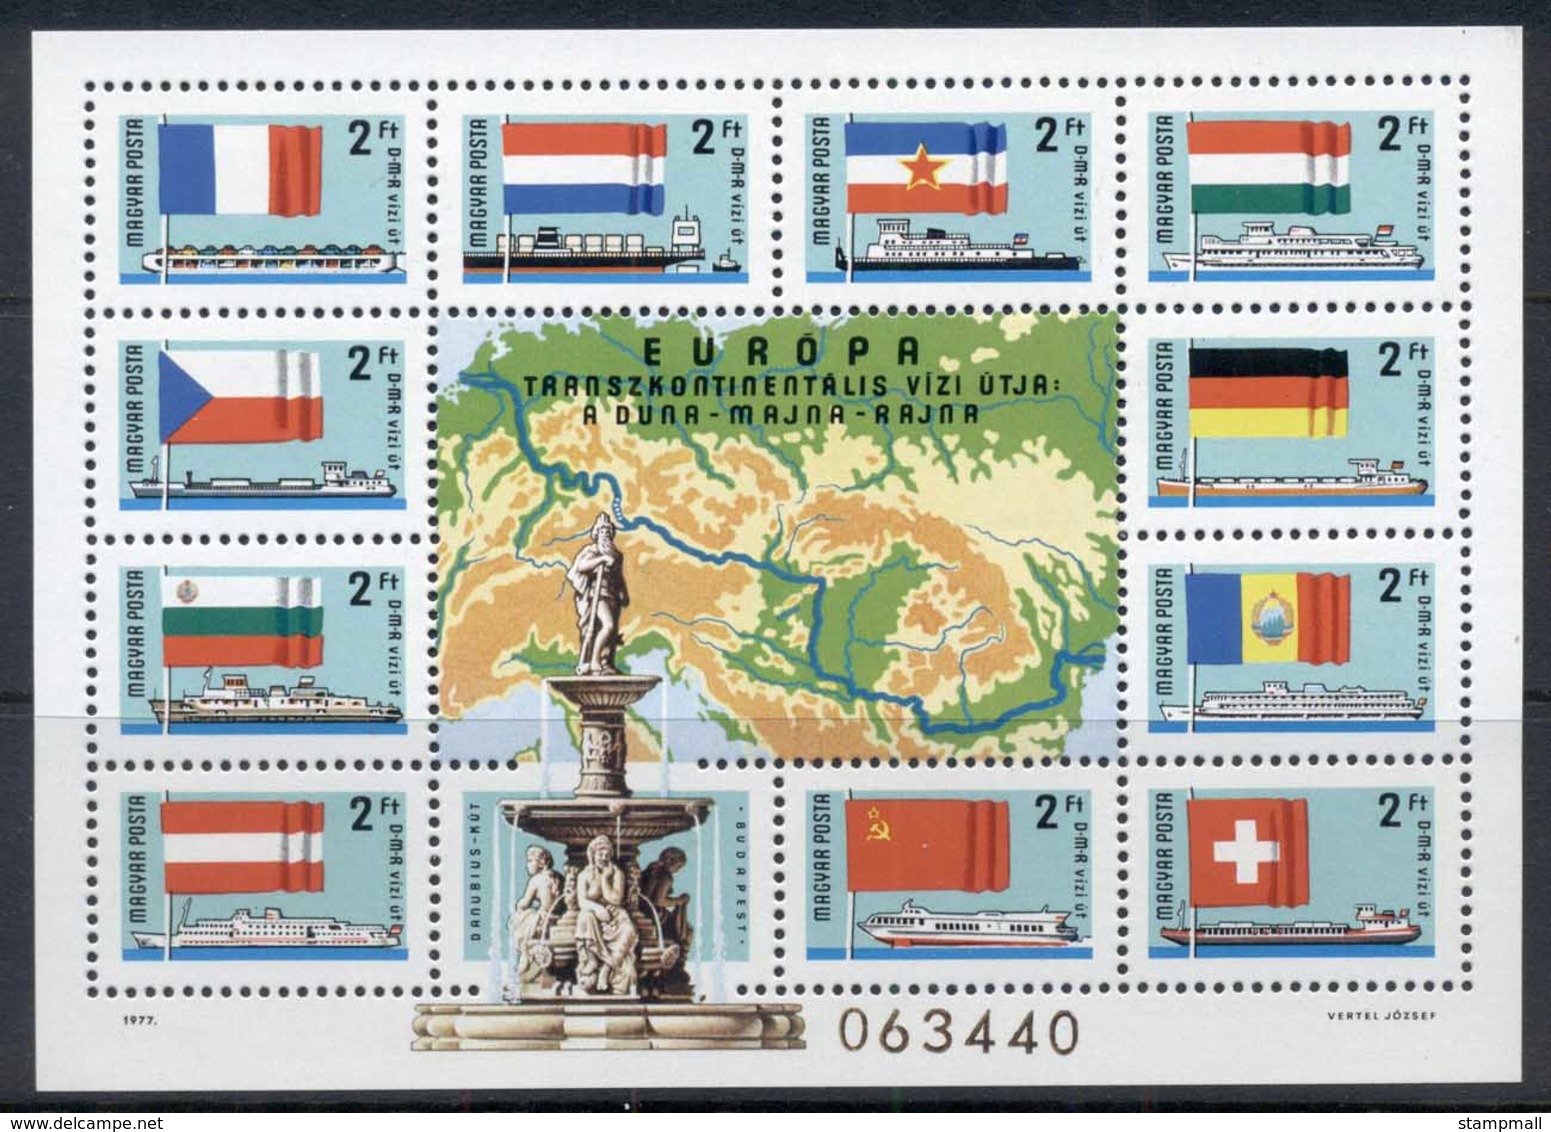 Hungary 1977 Waterways MS MUH - Unused Stamps